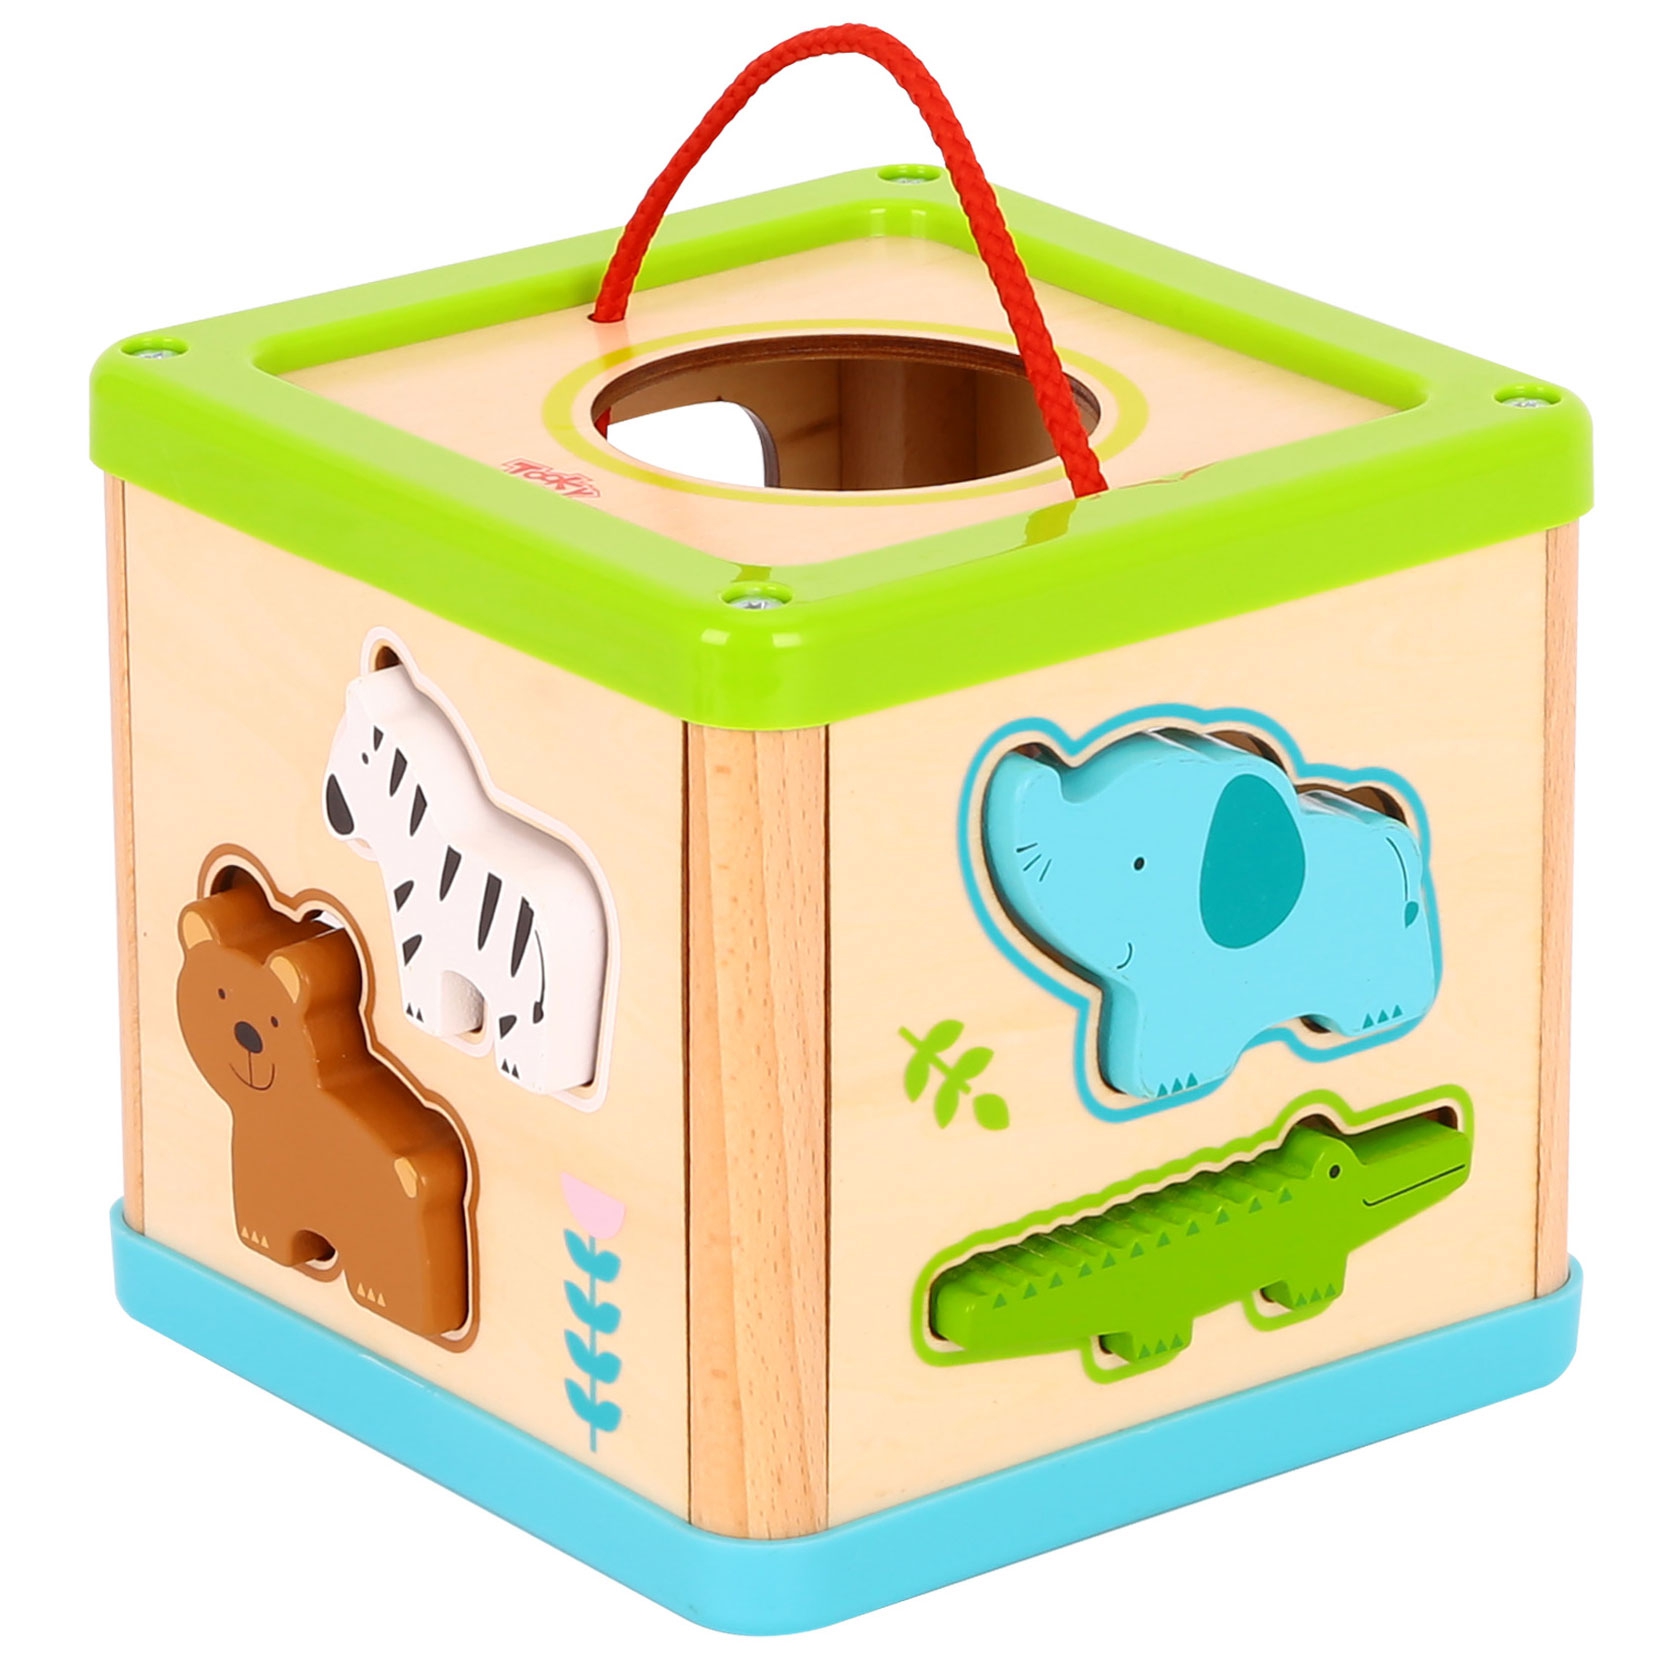 Drewniany sorter kostka edukacyjna zwierzątka, zabawka dla dzieci, Tooky Toy